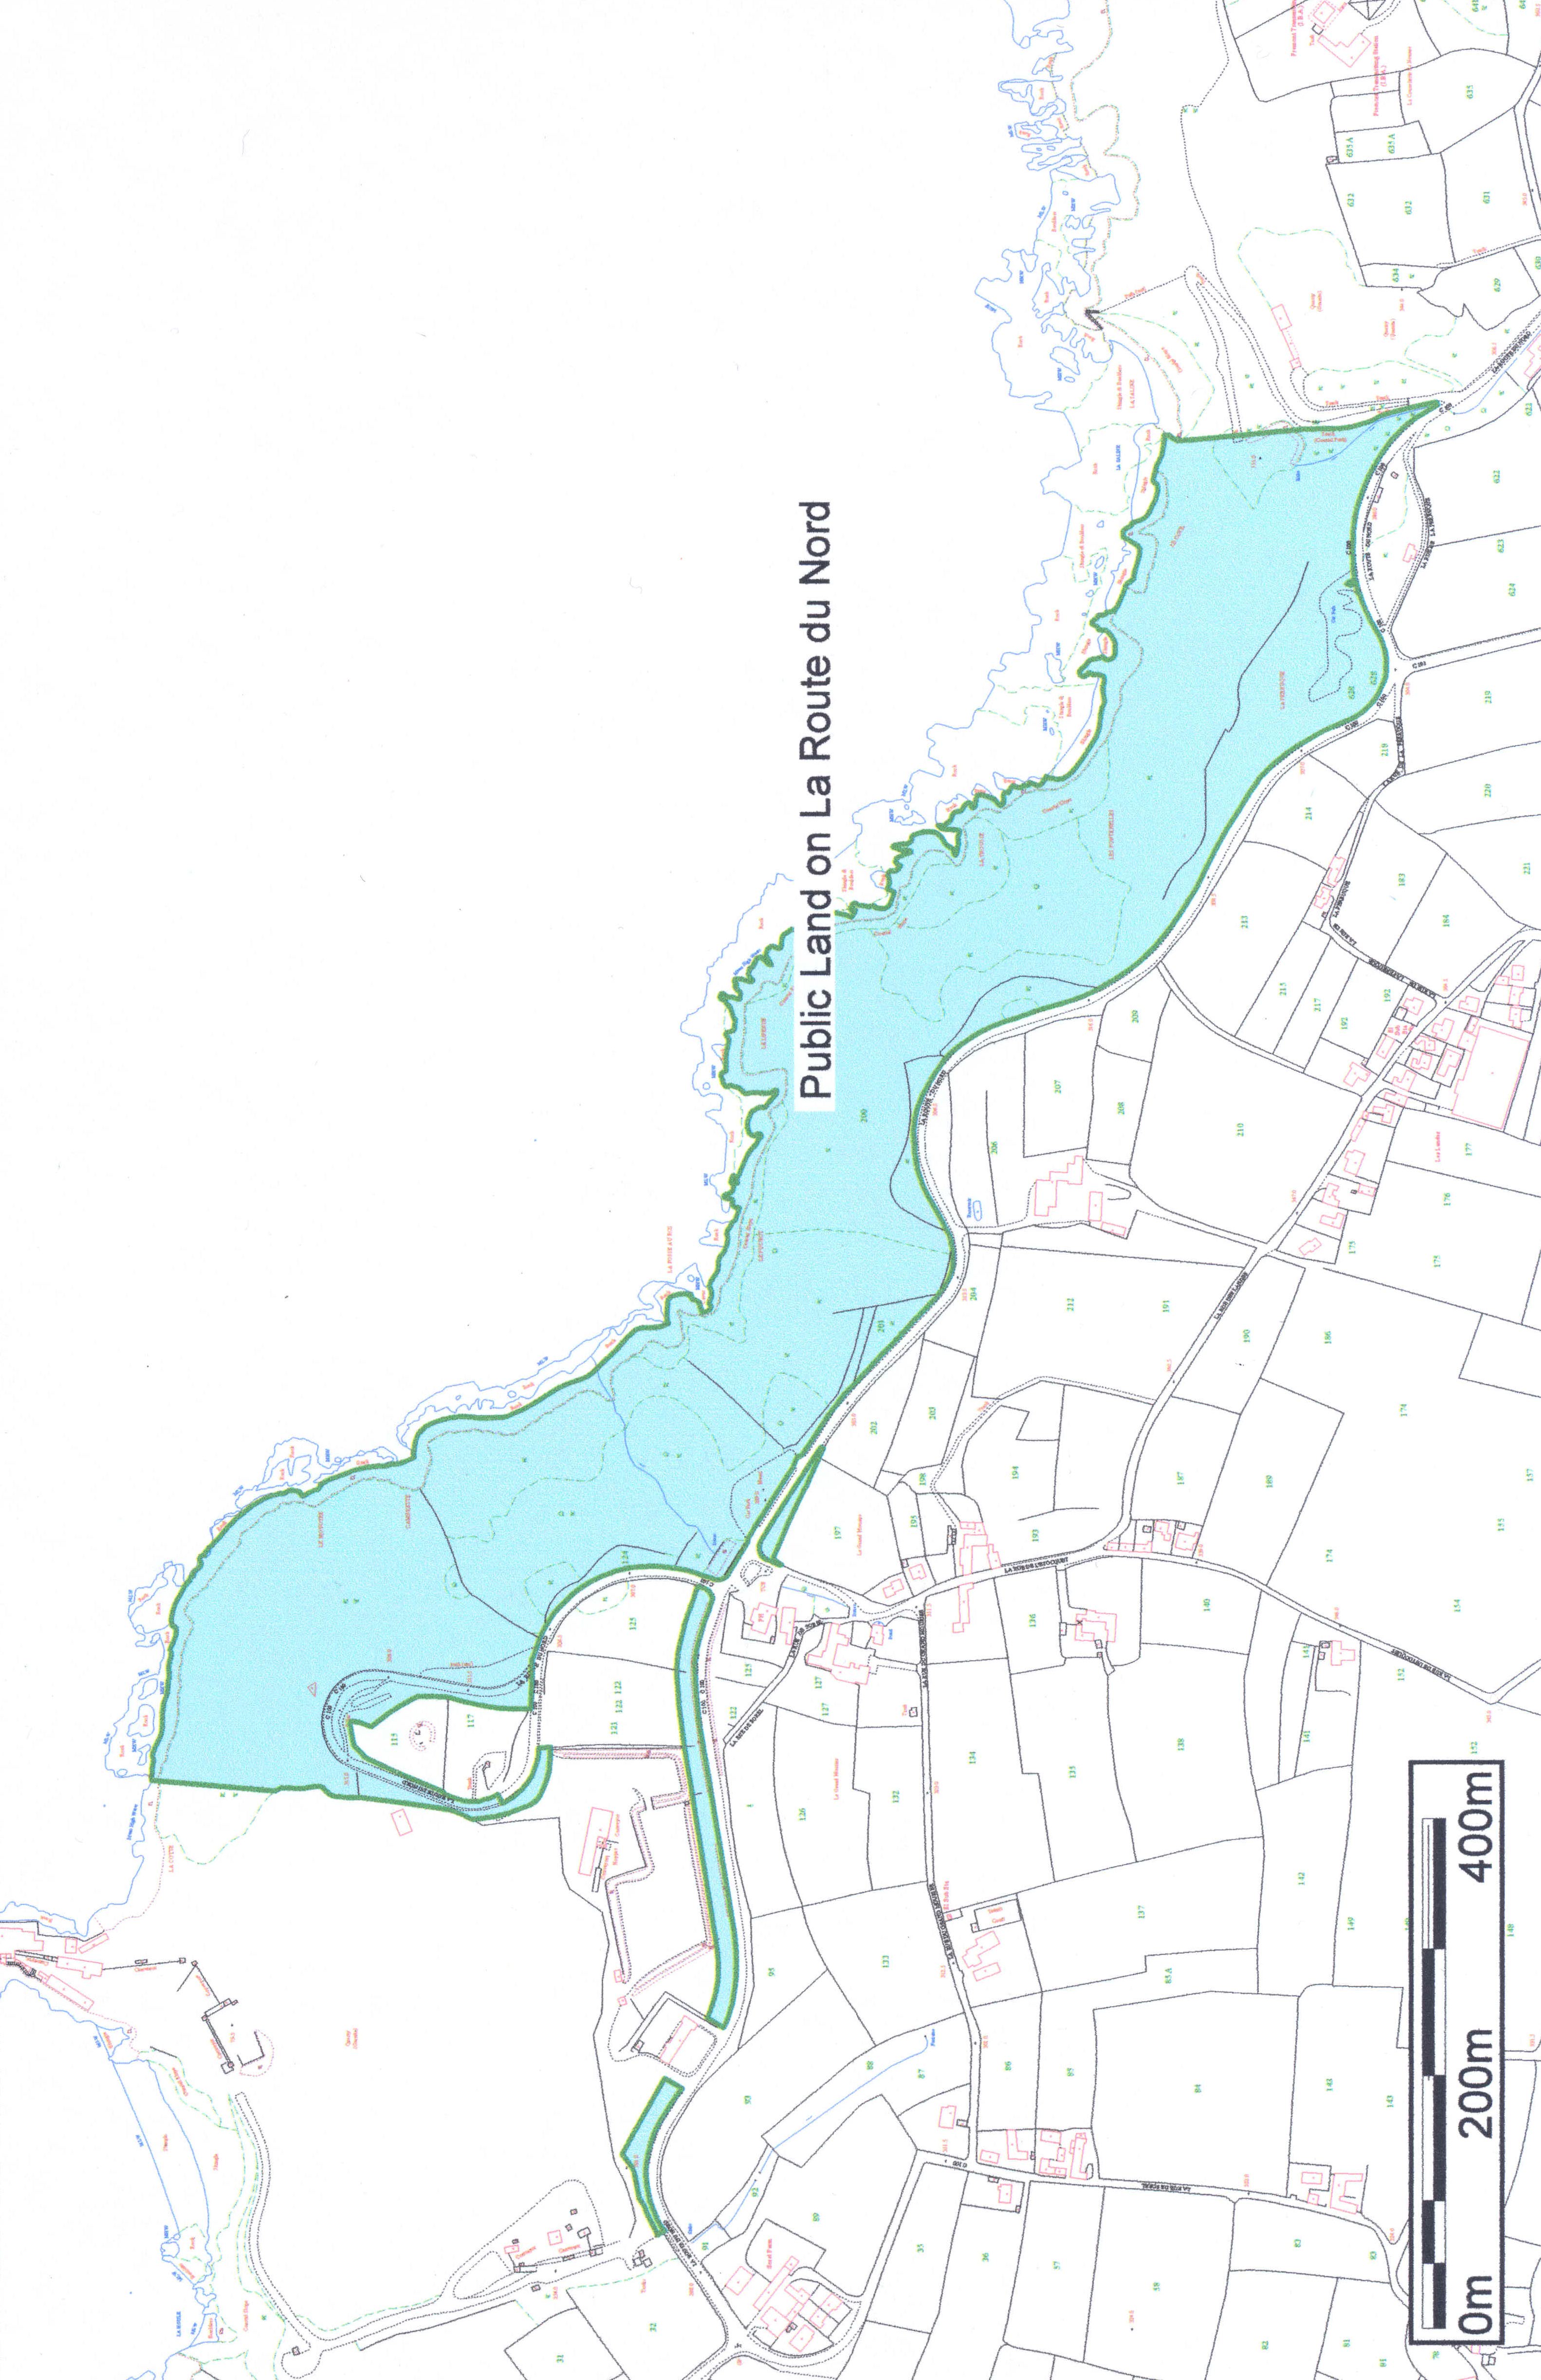 Part 3 - map of public land on La Route du Nord